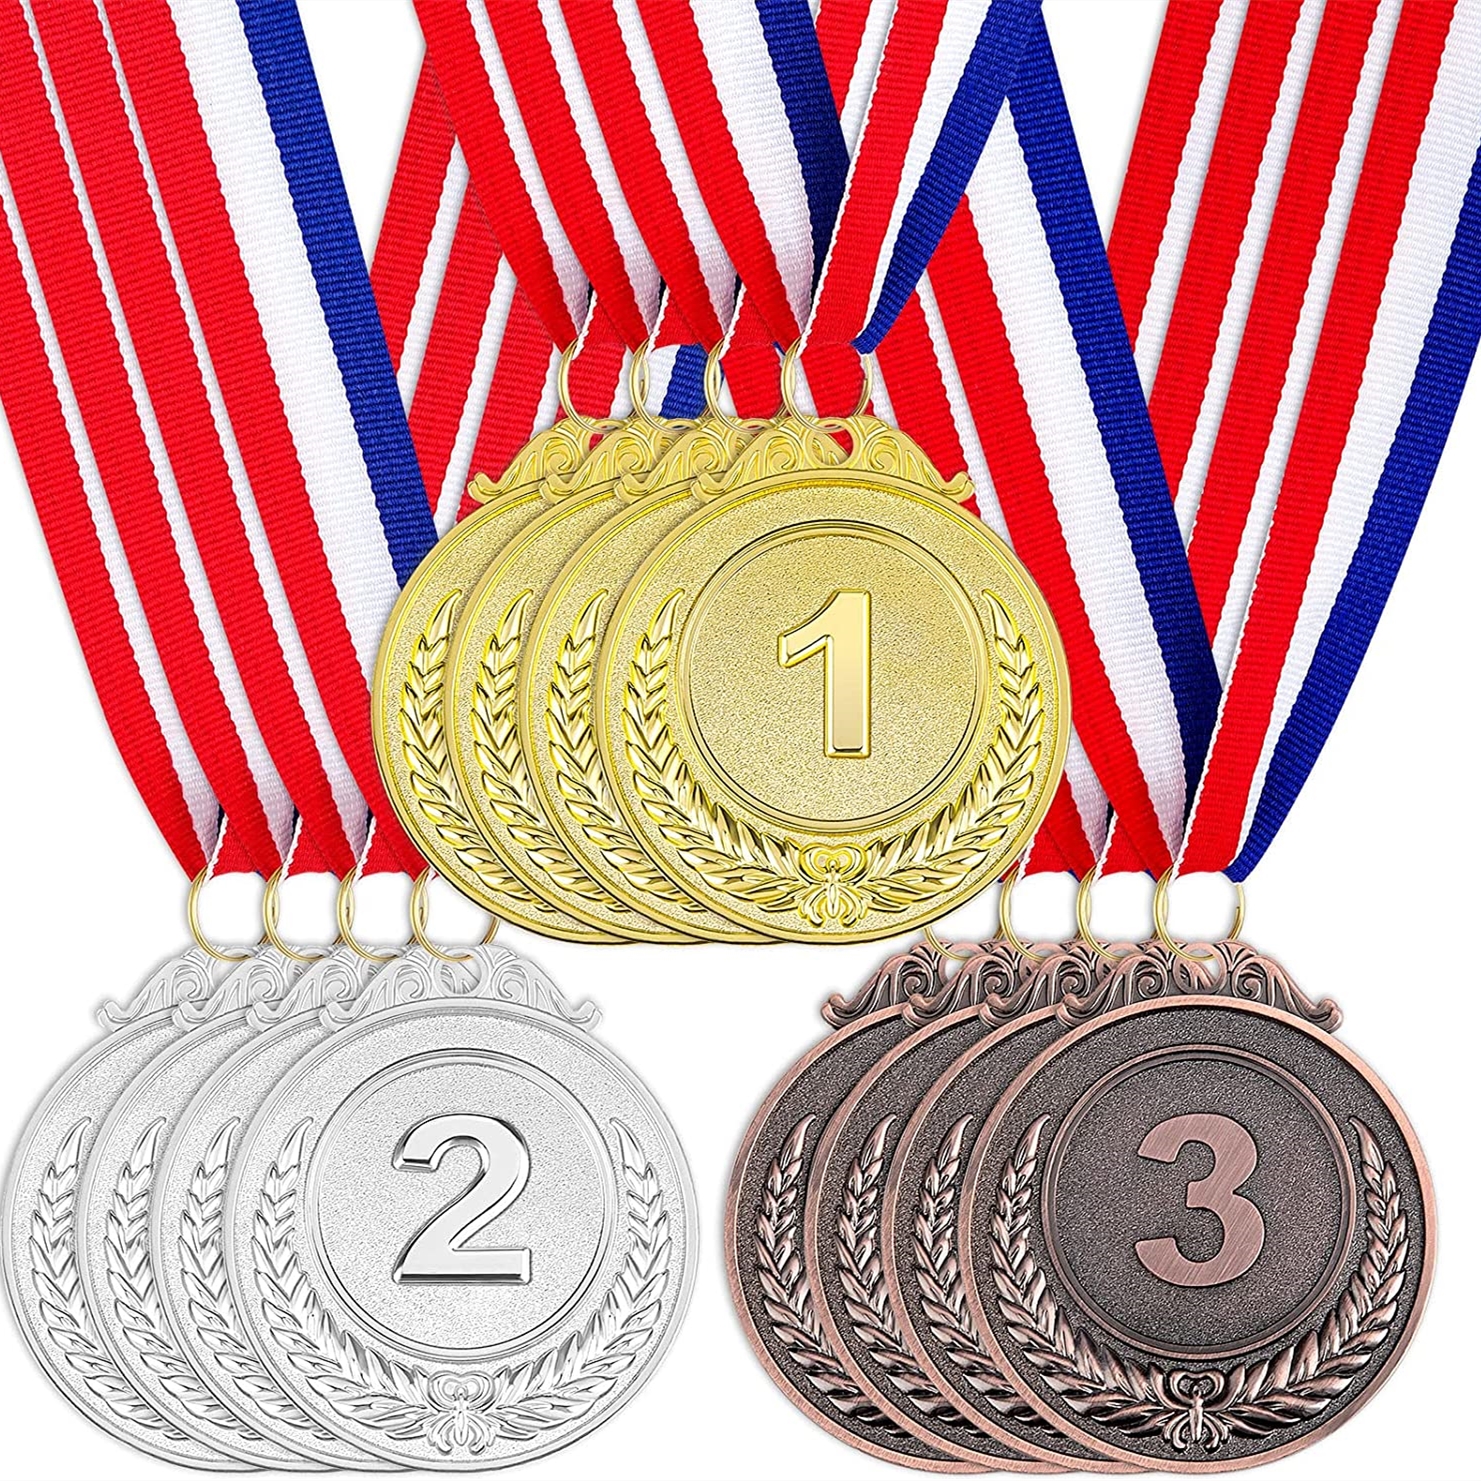 Golden medal. Golden award or medal with golden ribbon